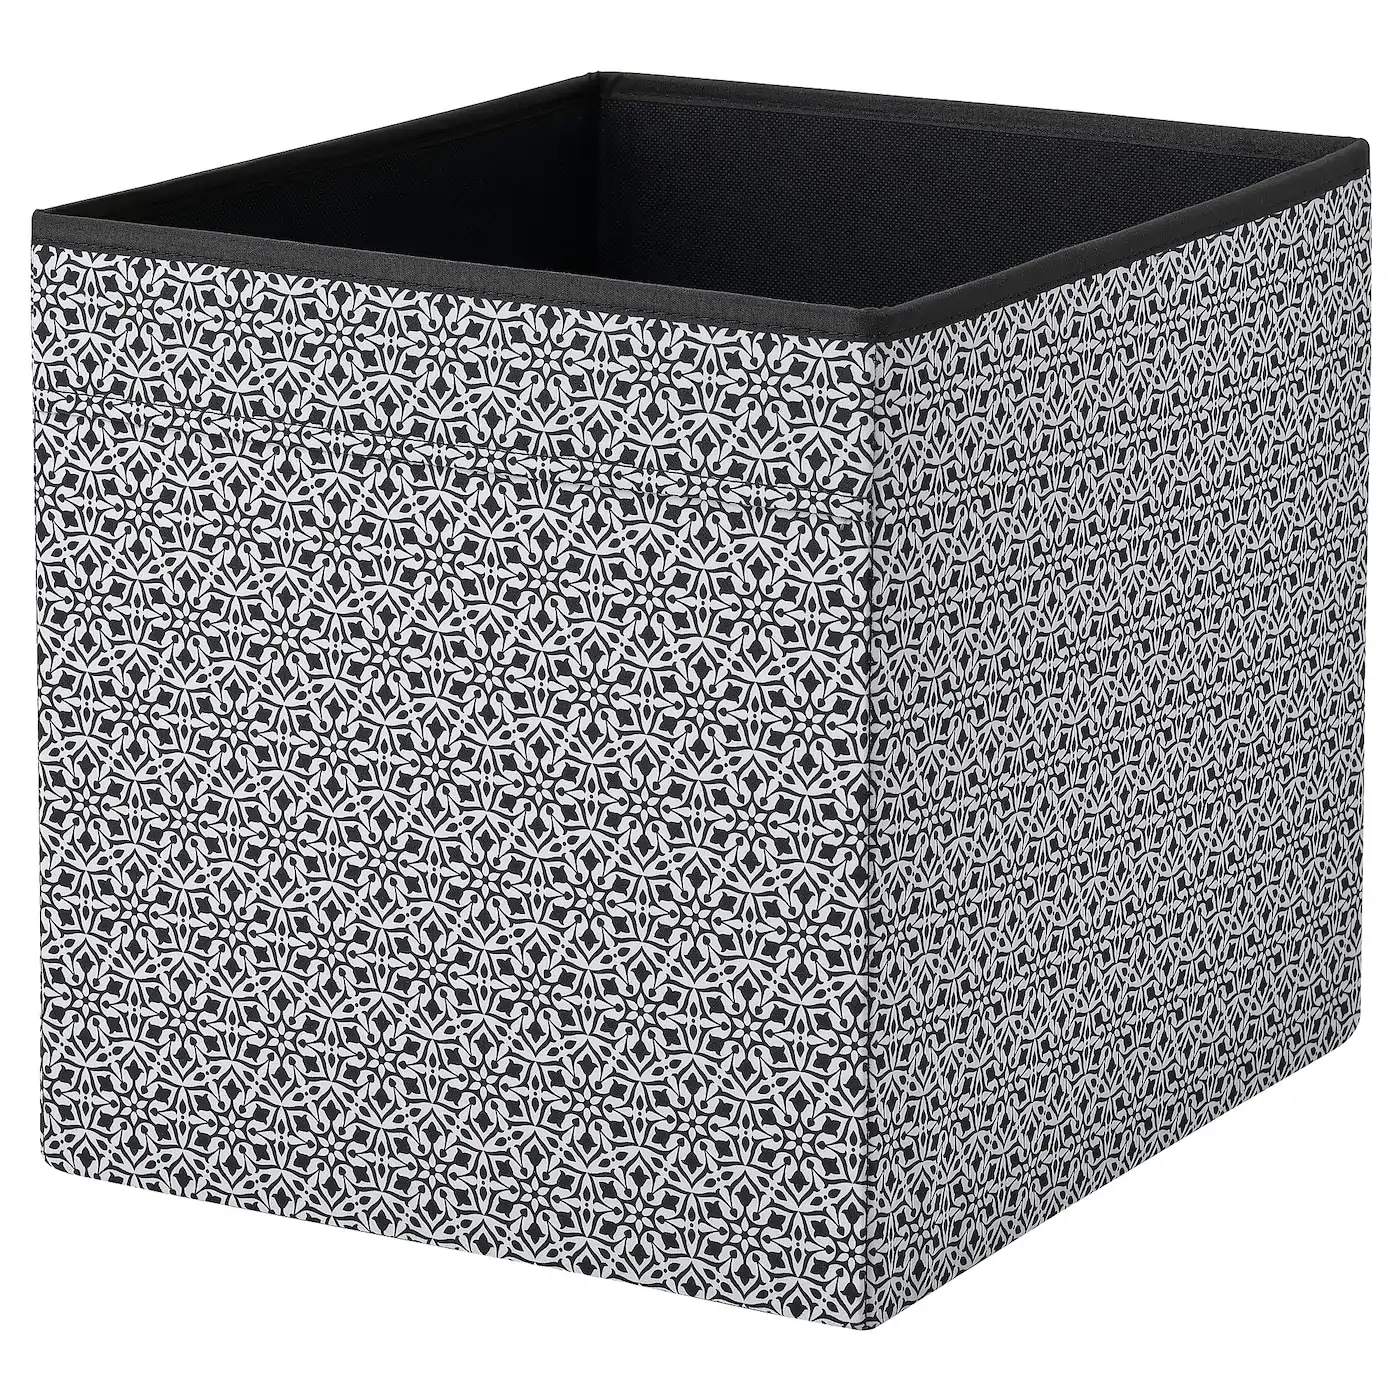 Коробка «Ikea» Drоna, черно-белая, 33x38x33 см, 905.120.58